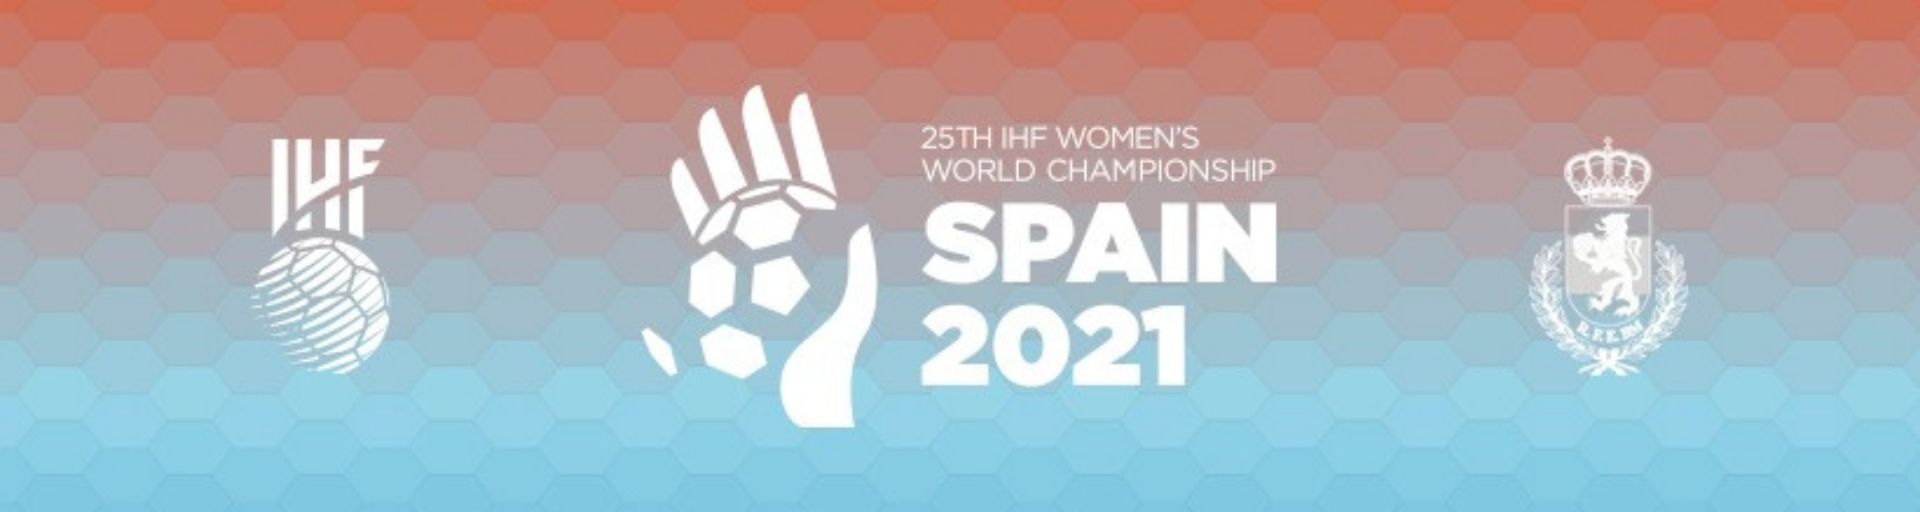 Чемпионат мира по гандболу 2021 среди женщин